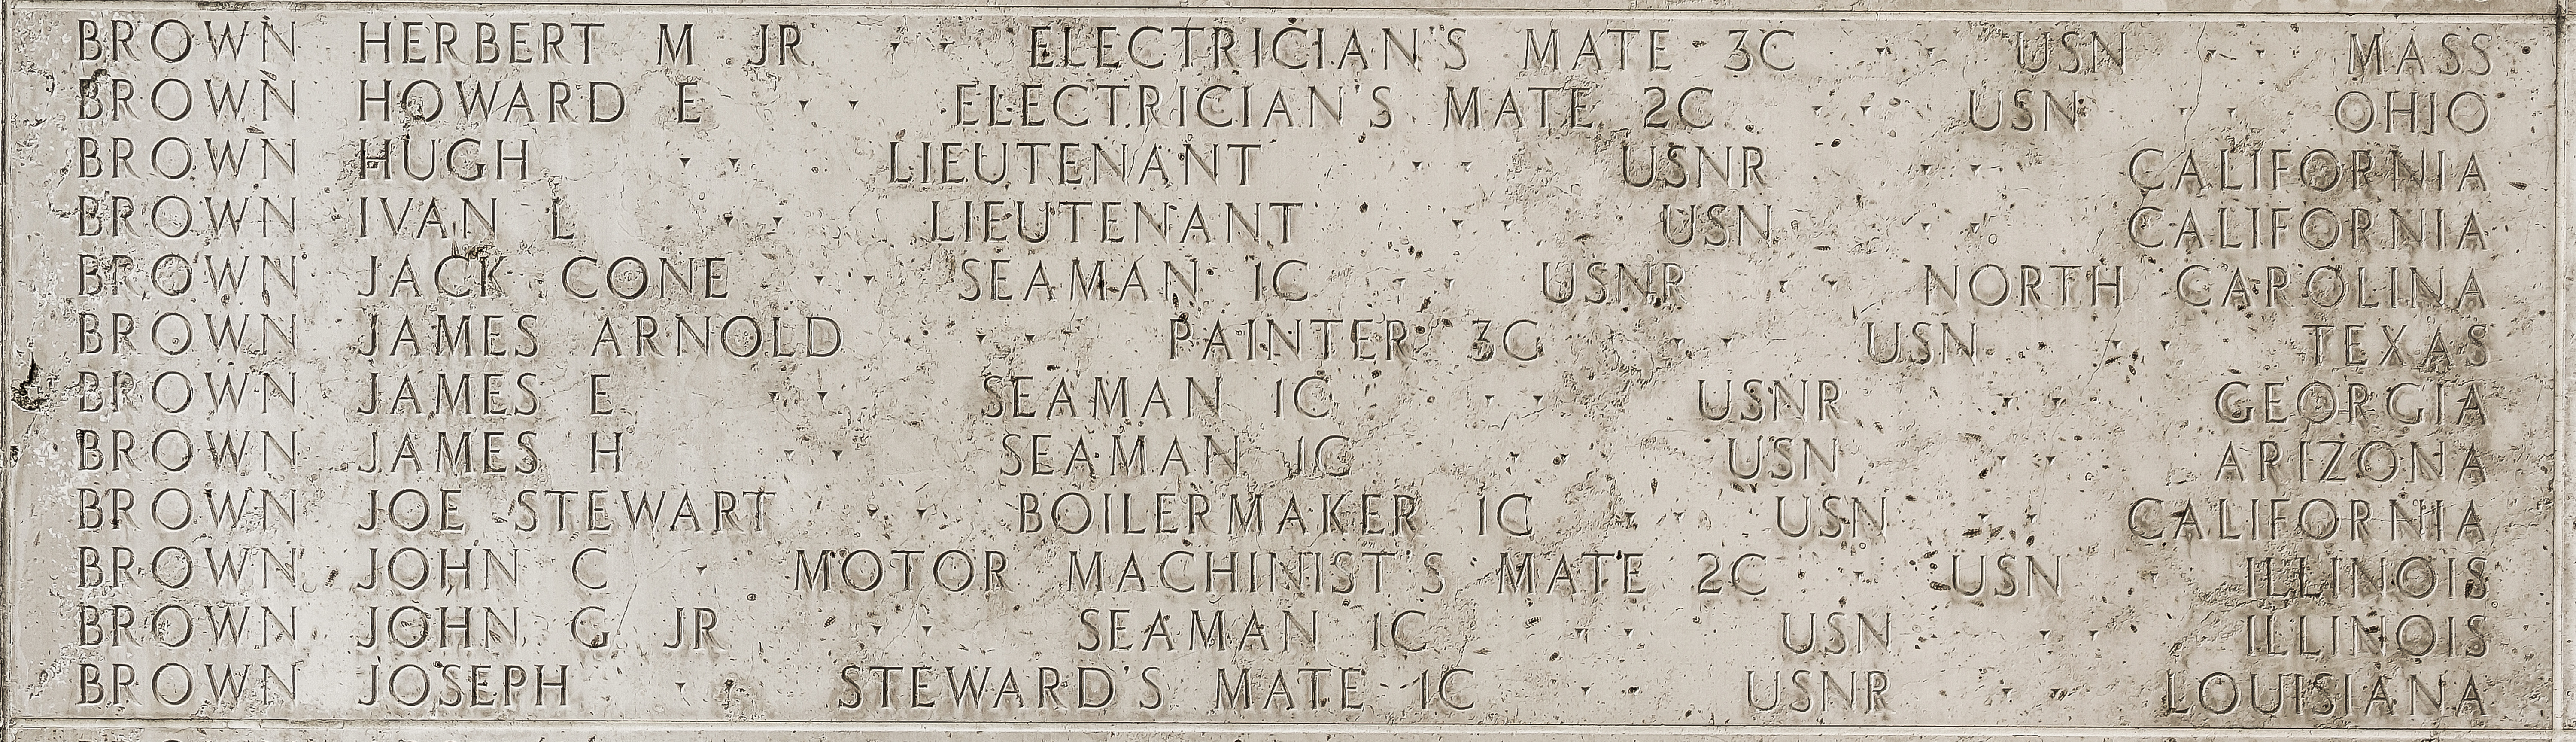 Herbert M. Brown, Electrician's Mate Third Class